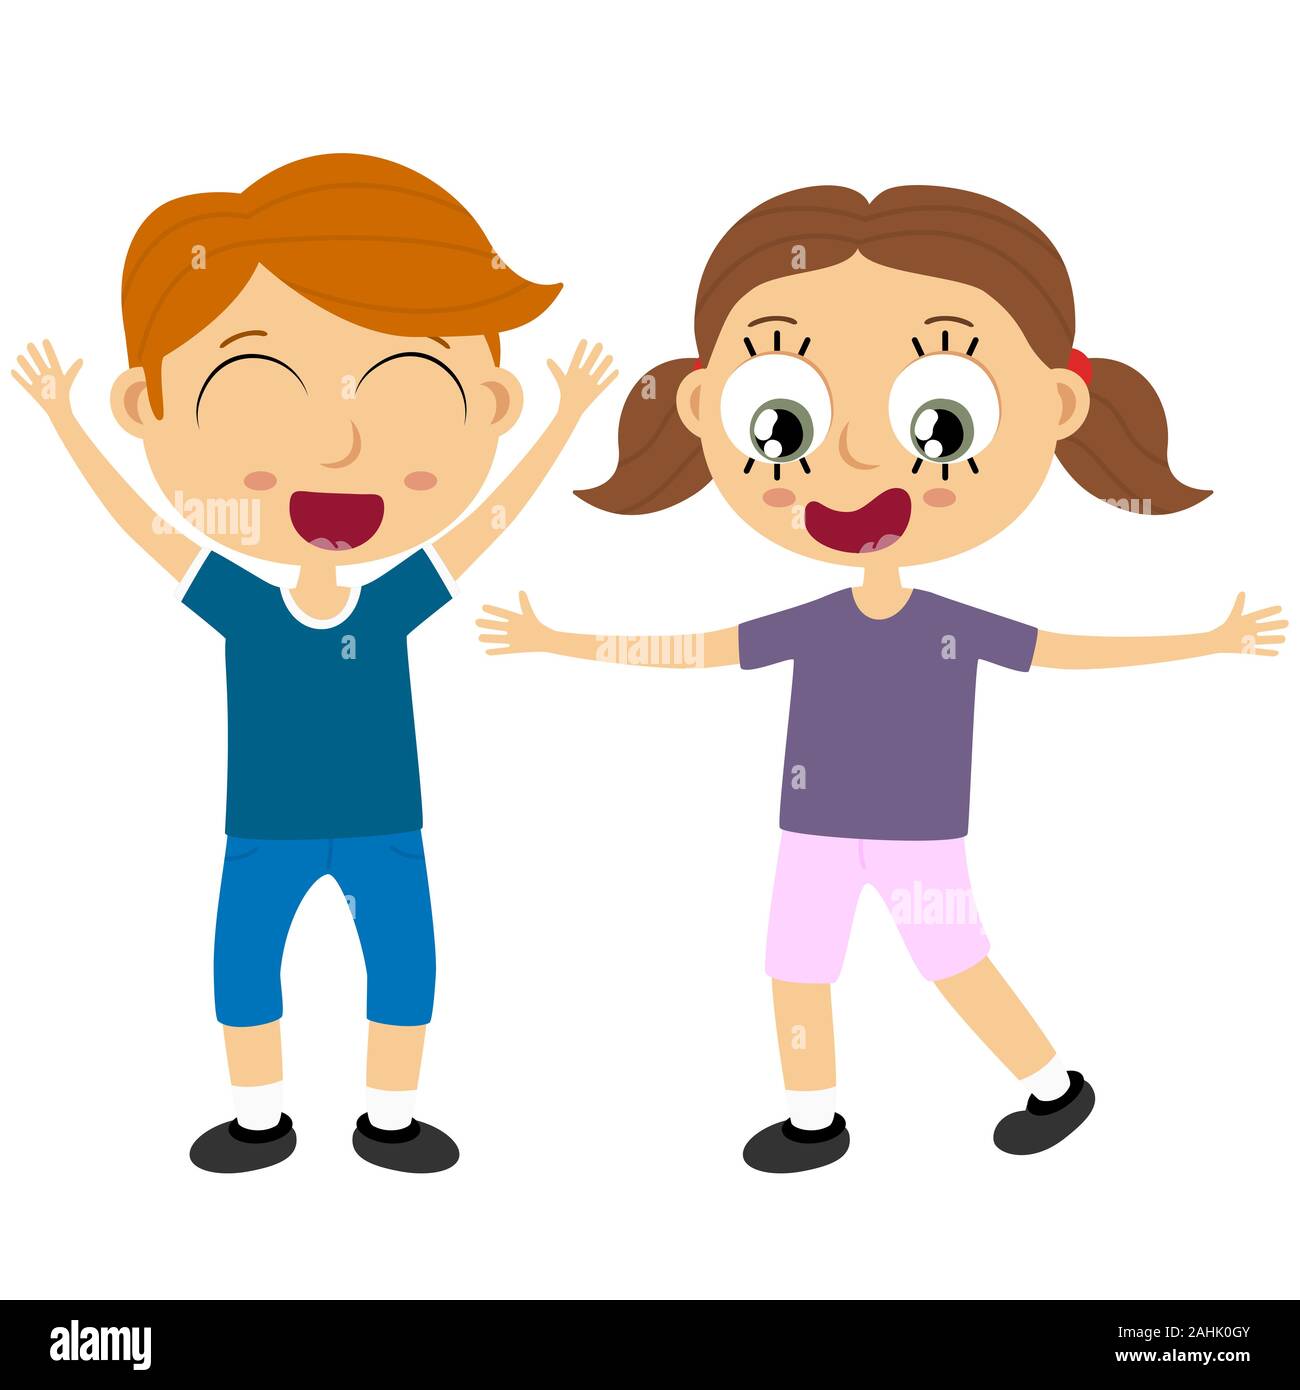 EPS 10 Vektordatei anzeigen glückliche junge Kinder mit unterschiedlichen Hautfarben, Jungen und Mädchen lachen, hüpfen, Spielen und gemeinsam Spaß haben Stock Vektor